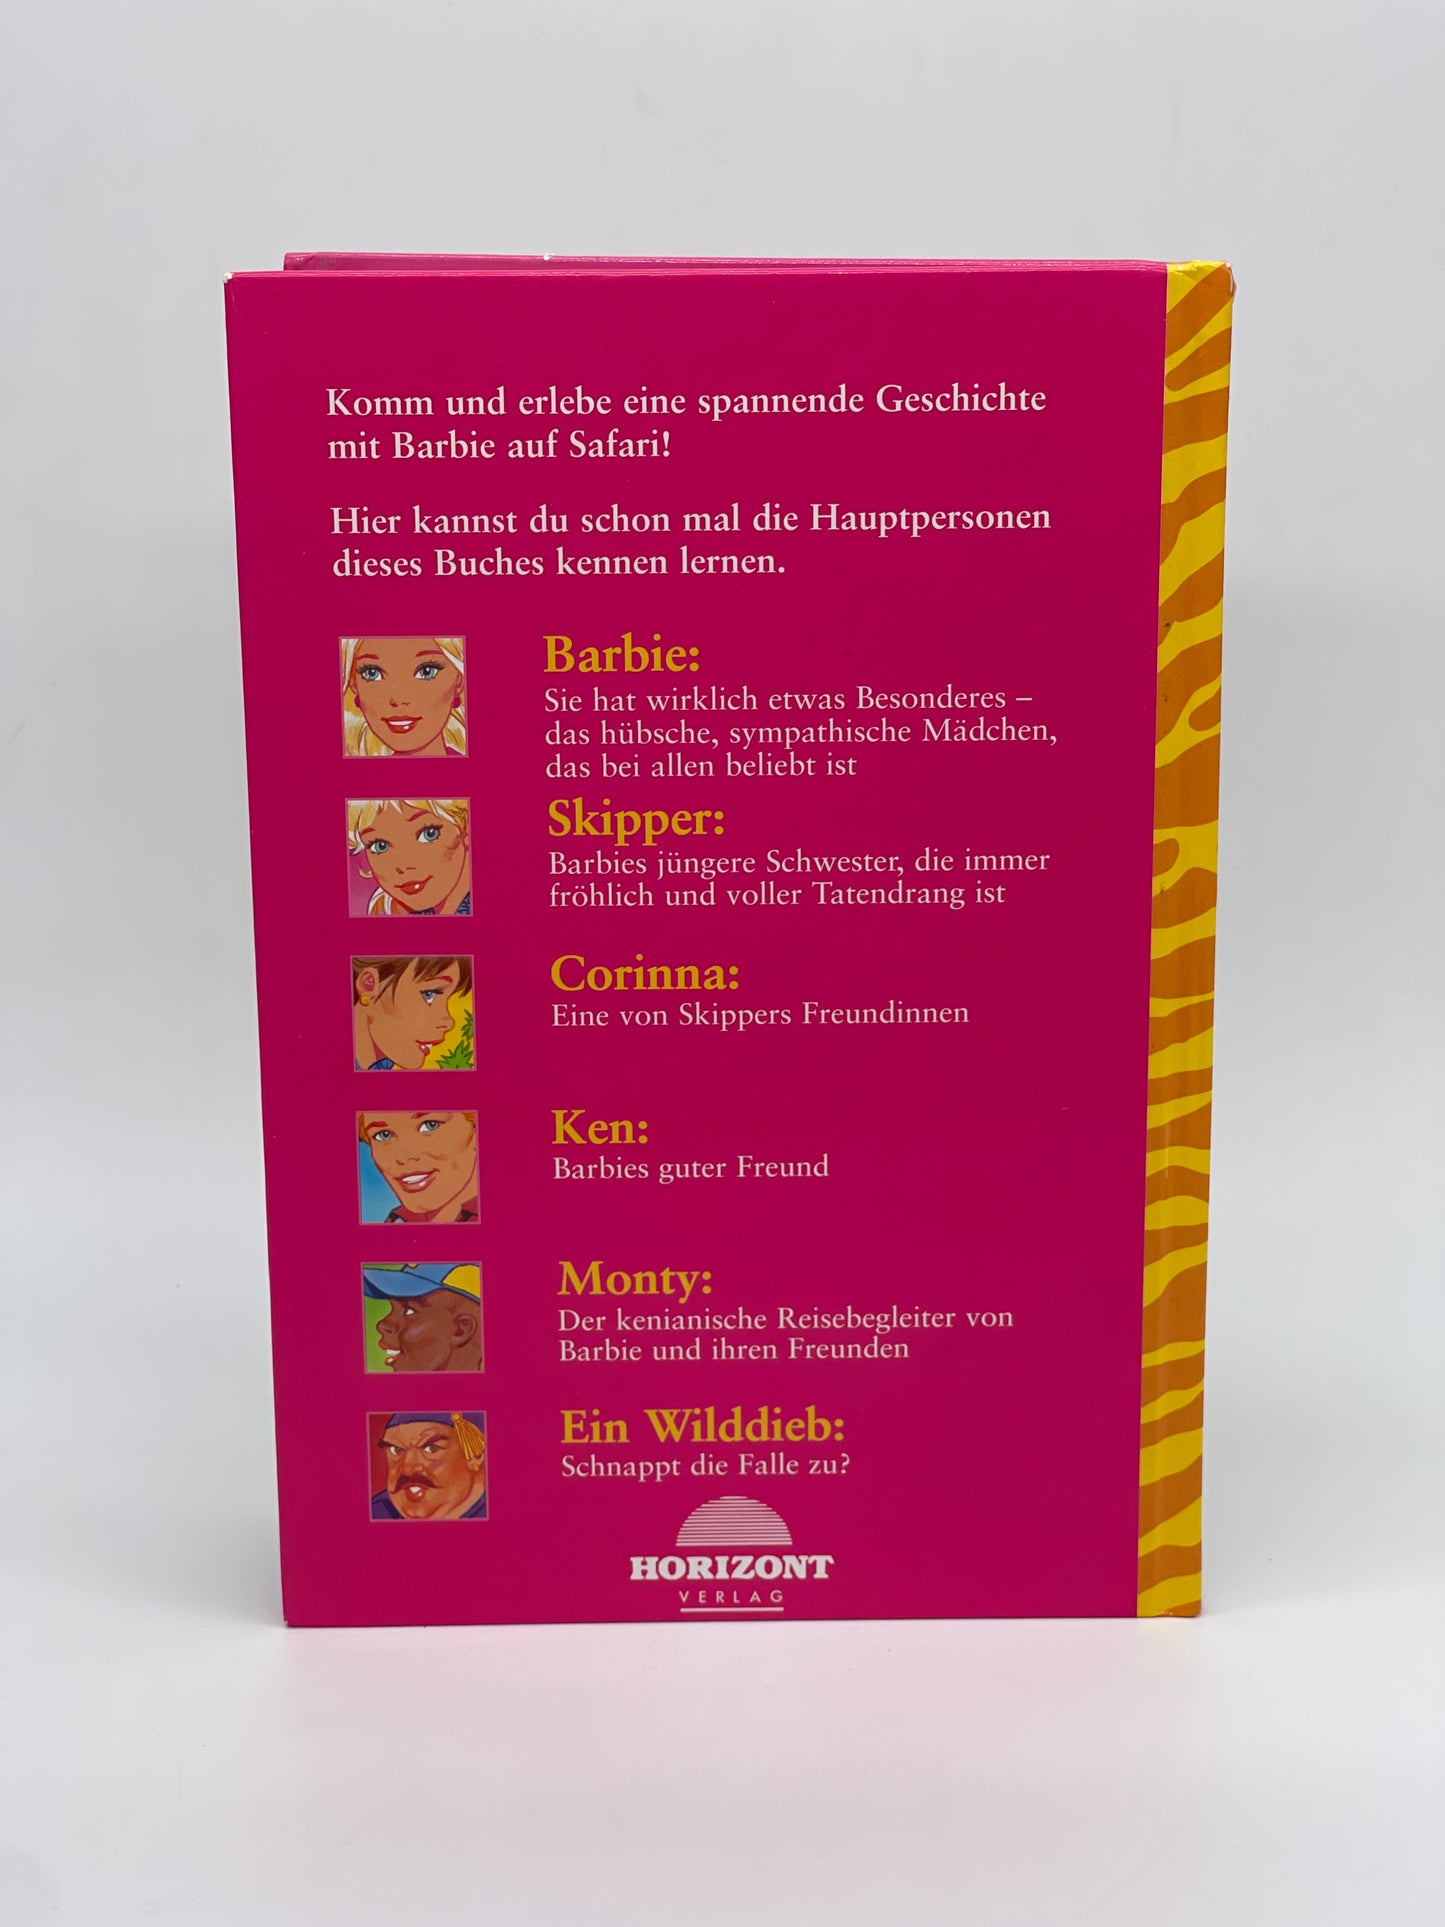 Barbie Kinderbuch "Barbie auf Safari" Egmont Horizont Verlag (1996)